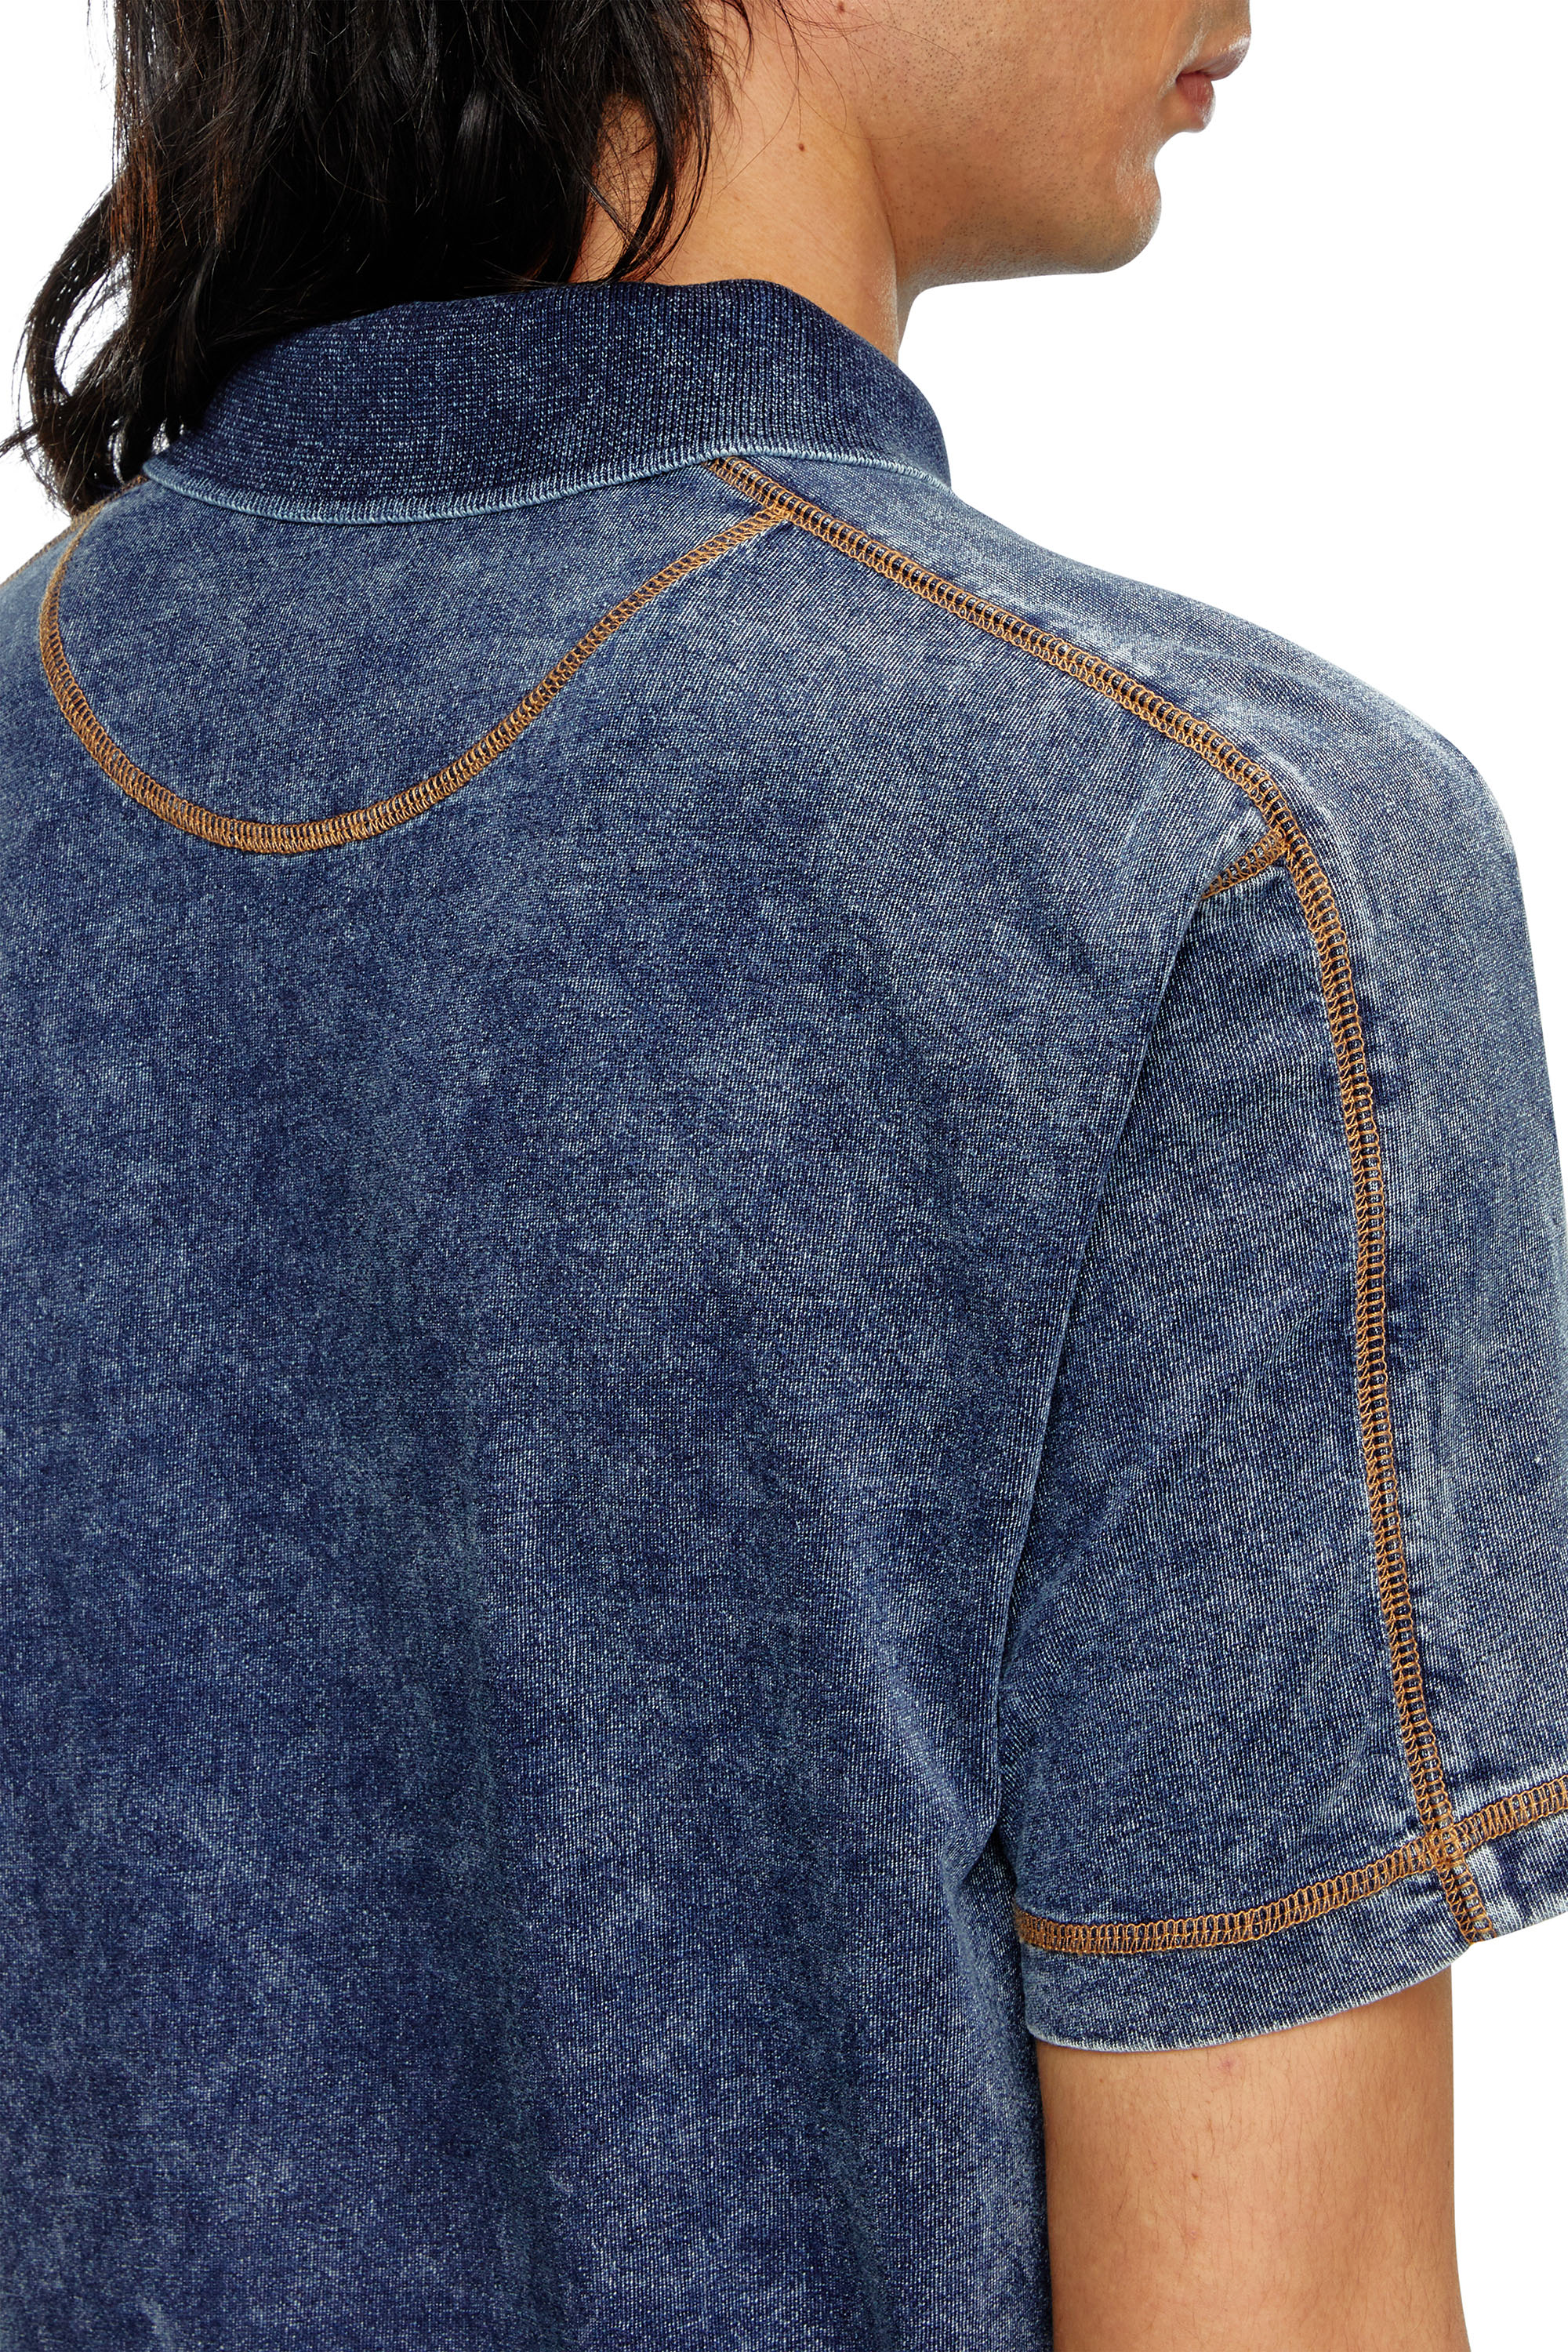 Diesel - T-SWIND, Male Polo shirt in denim-effect jersey in ブルー - Image 5